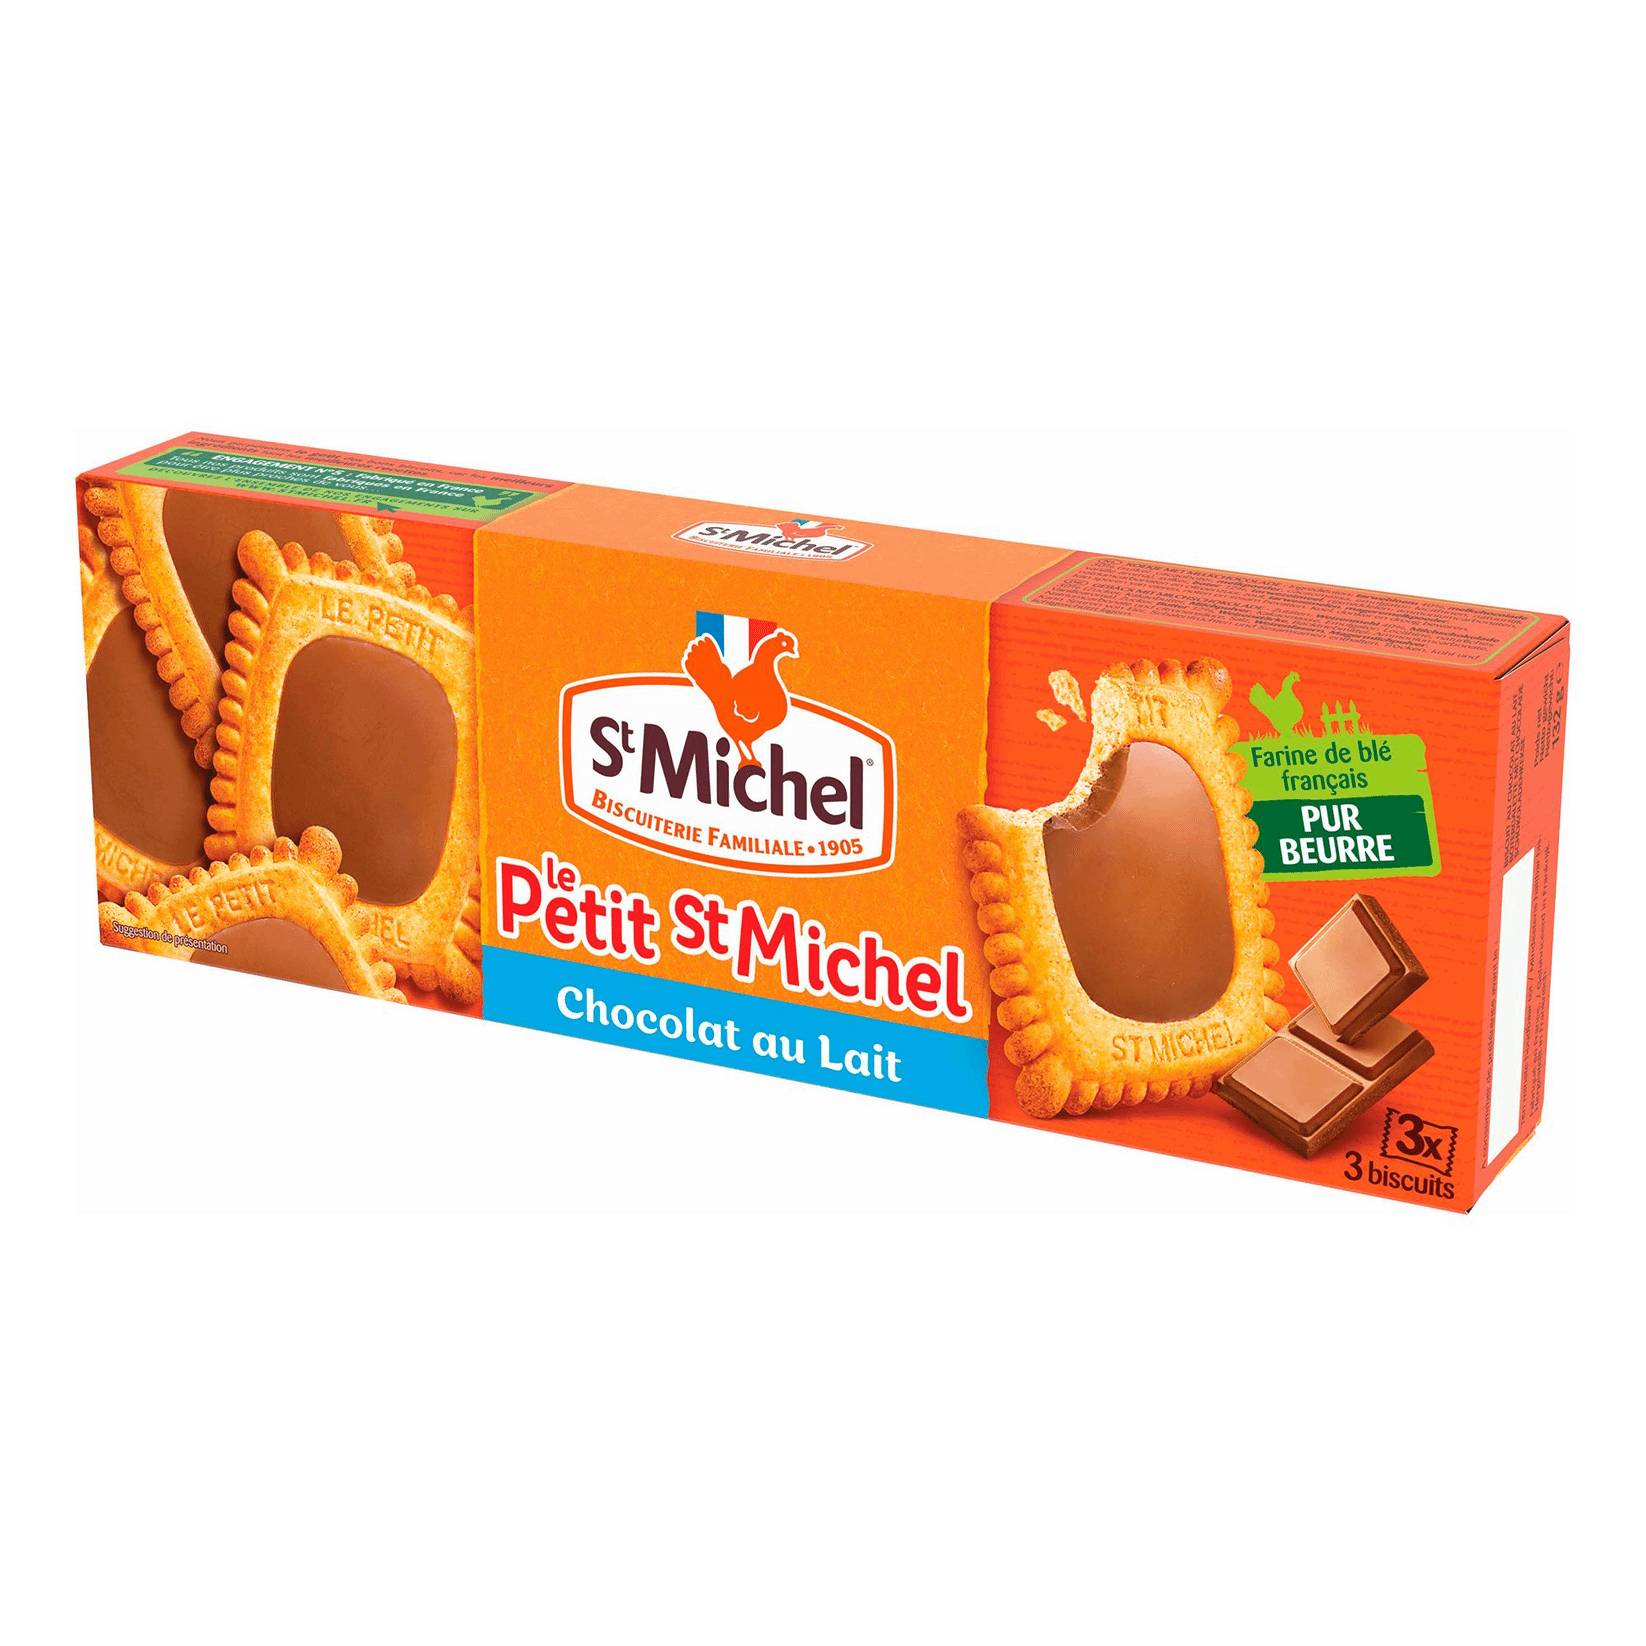 Печенье StMichel сливочное с шоколадом, 132 г масло сливочное экомилк 82 5% бзмж 180 гр